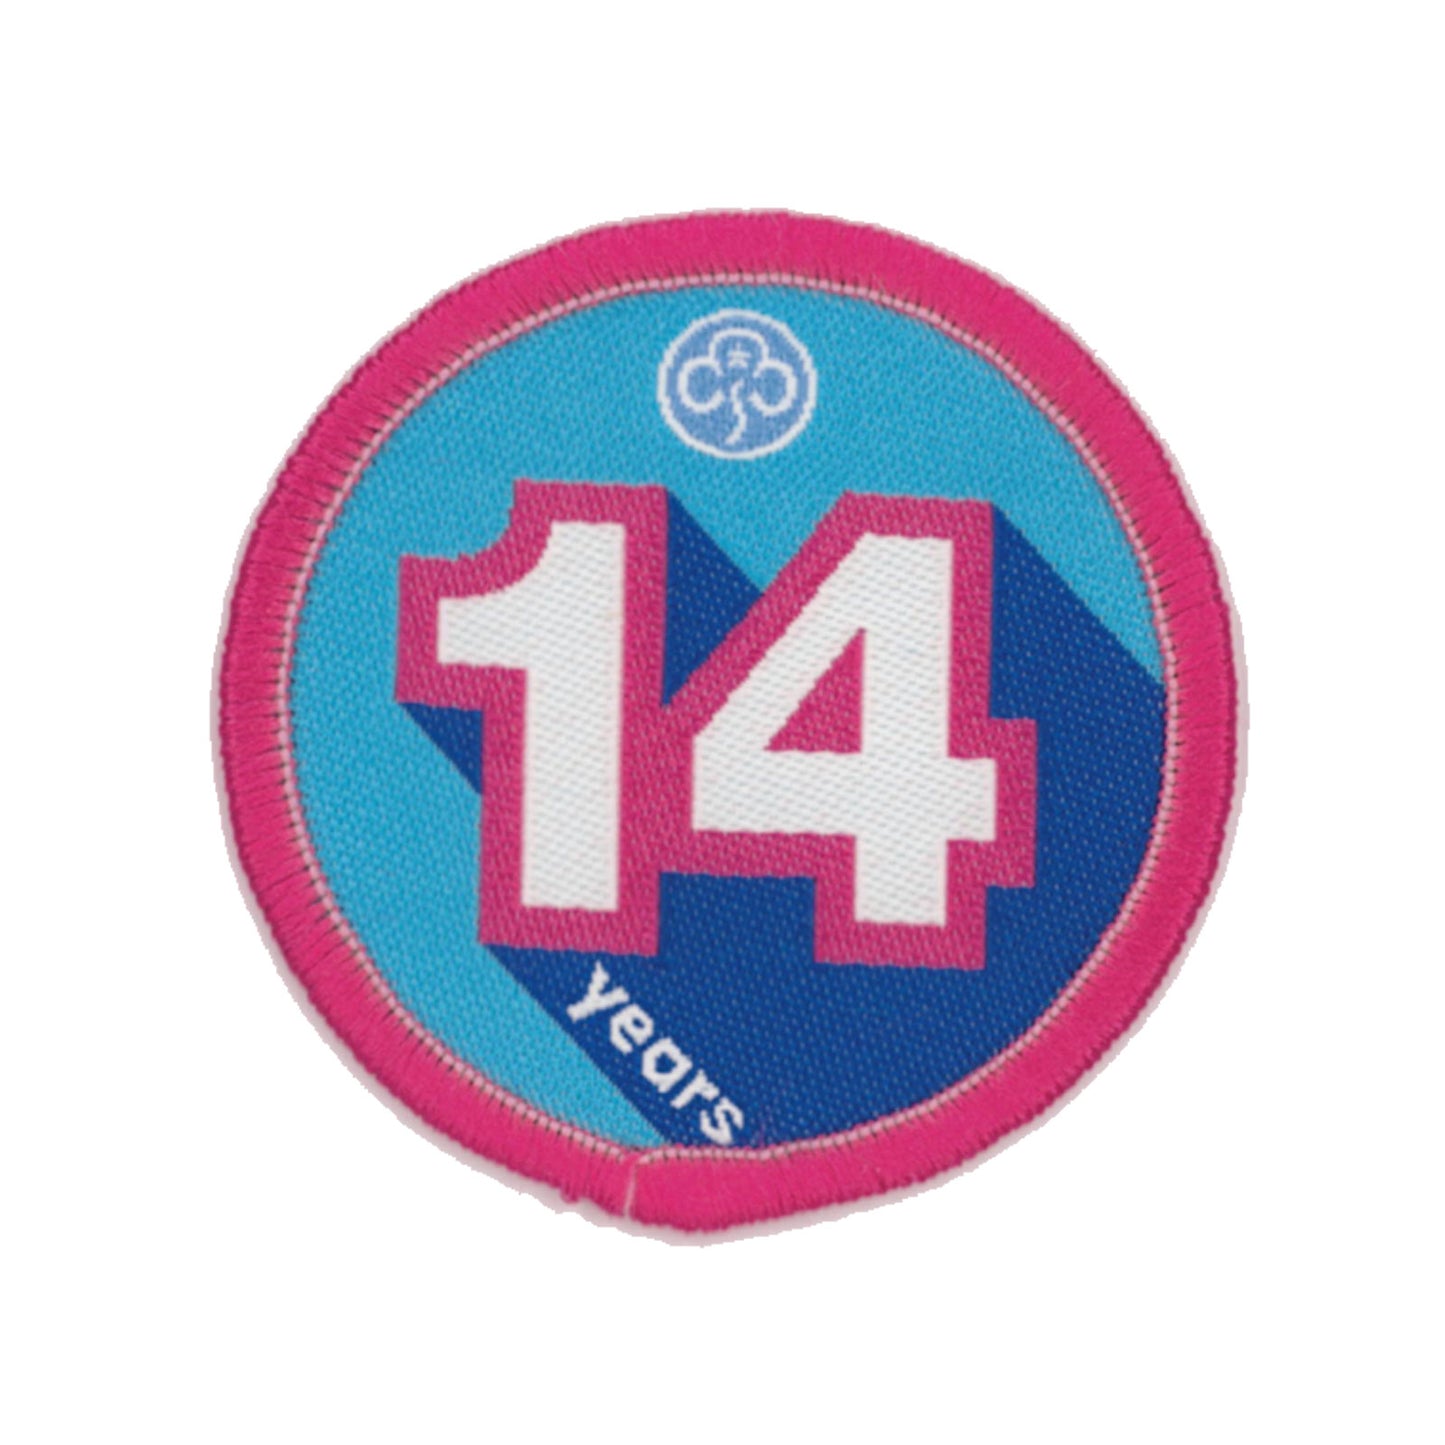 Anniversary Year 14 Woven Badge